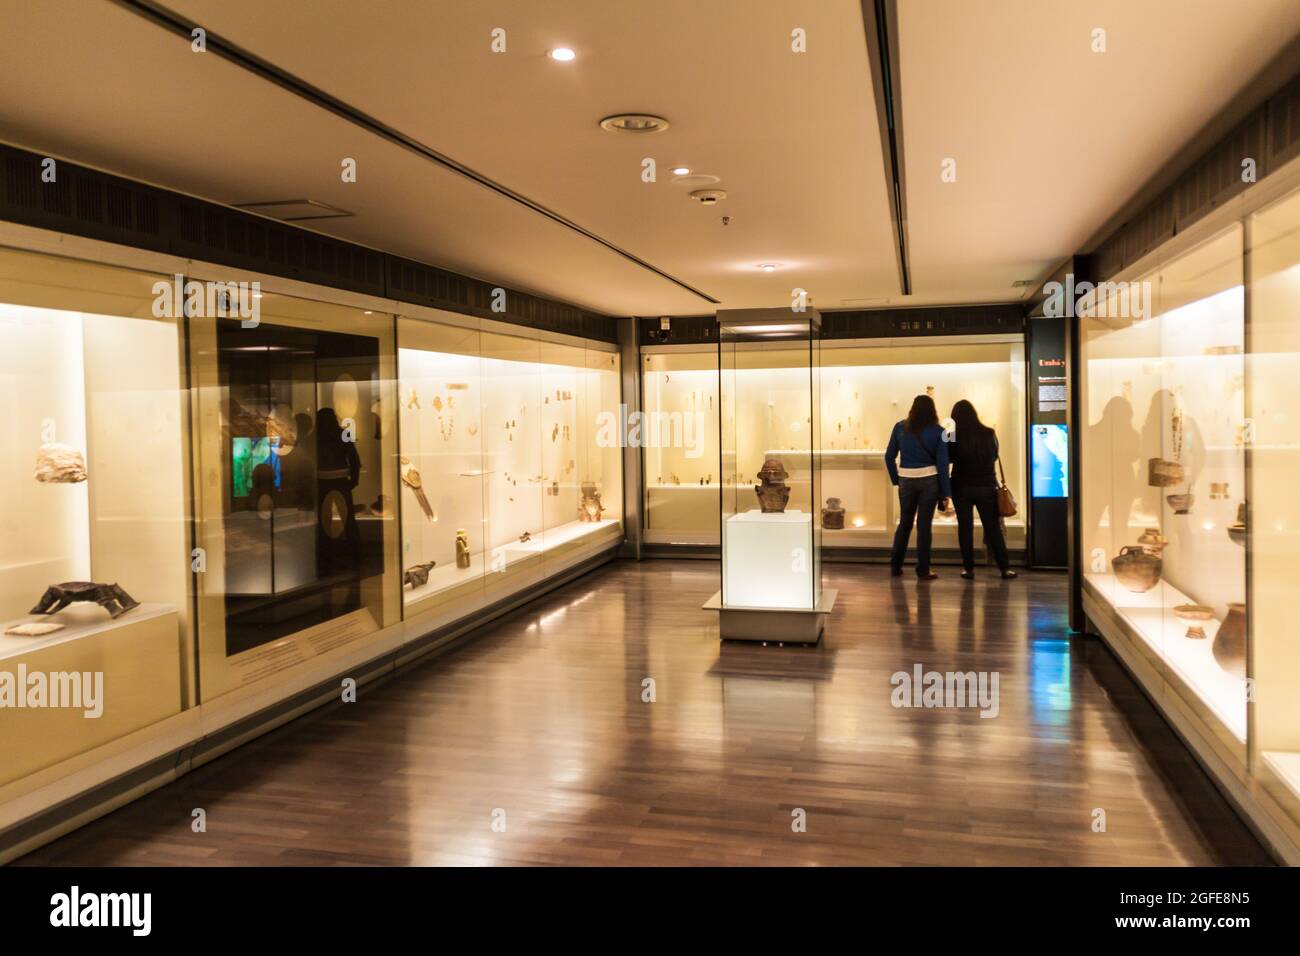 BOGOTA, KOLUMBIEN - 24. SEPTEMBER 2015: Besucher des Goldmuseums (Museo del Oro) in Bogota, der Hauptstadt Kolumbiens. Stockfoto